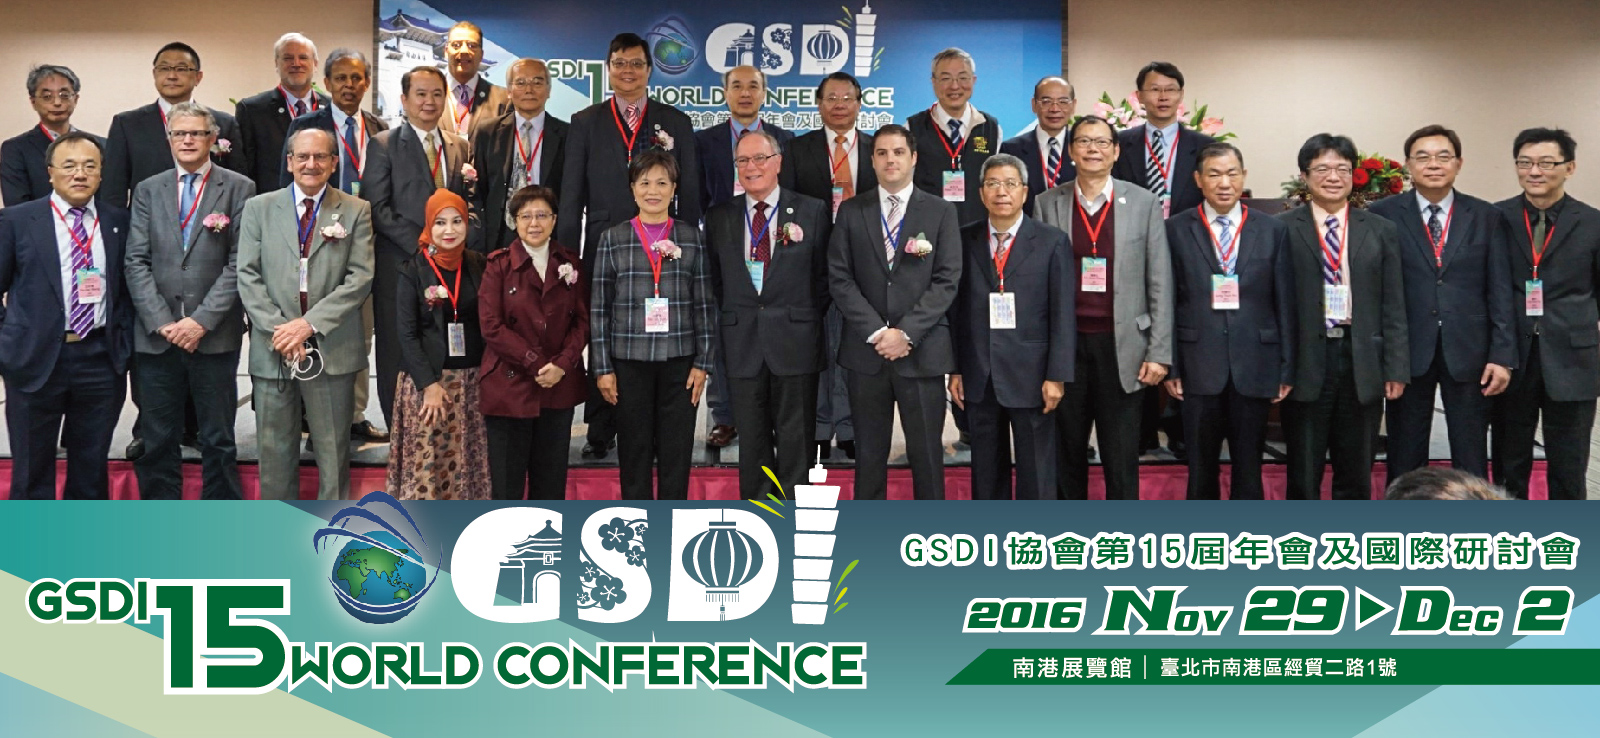 GSDI研討會齊聚國際專家，精進空間資訊應用發展